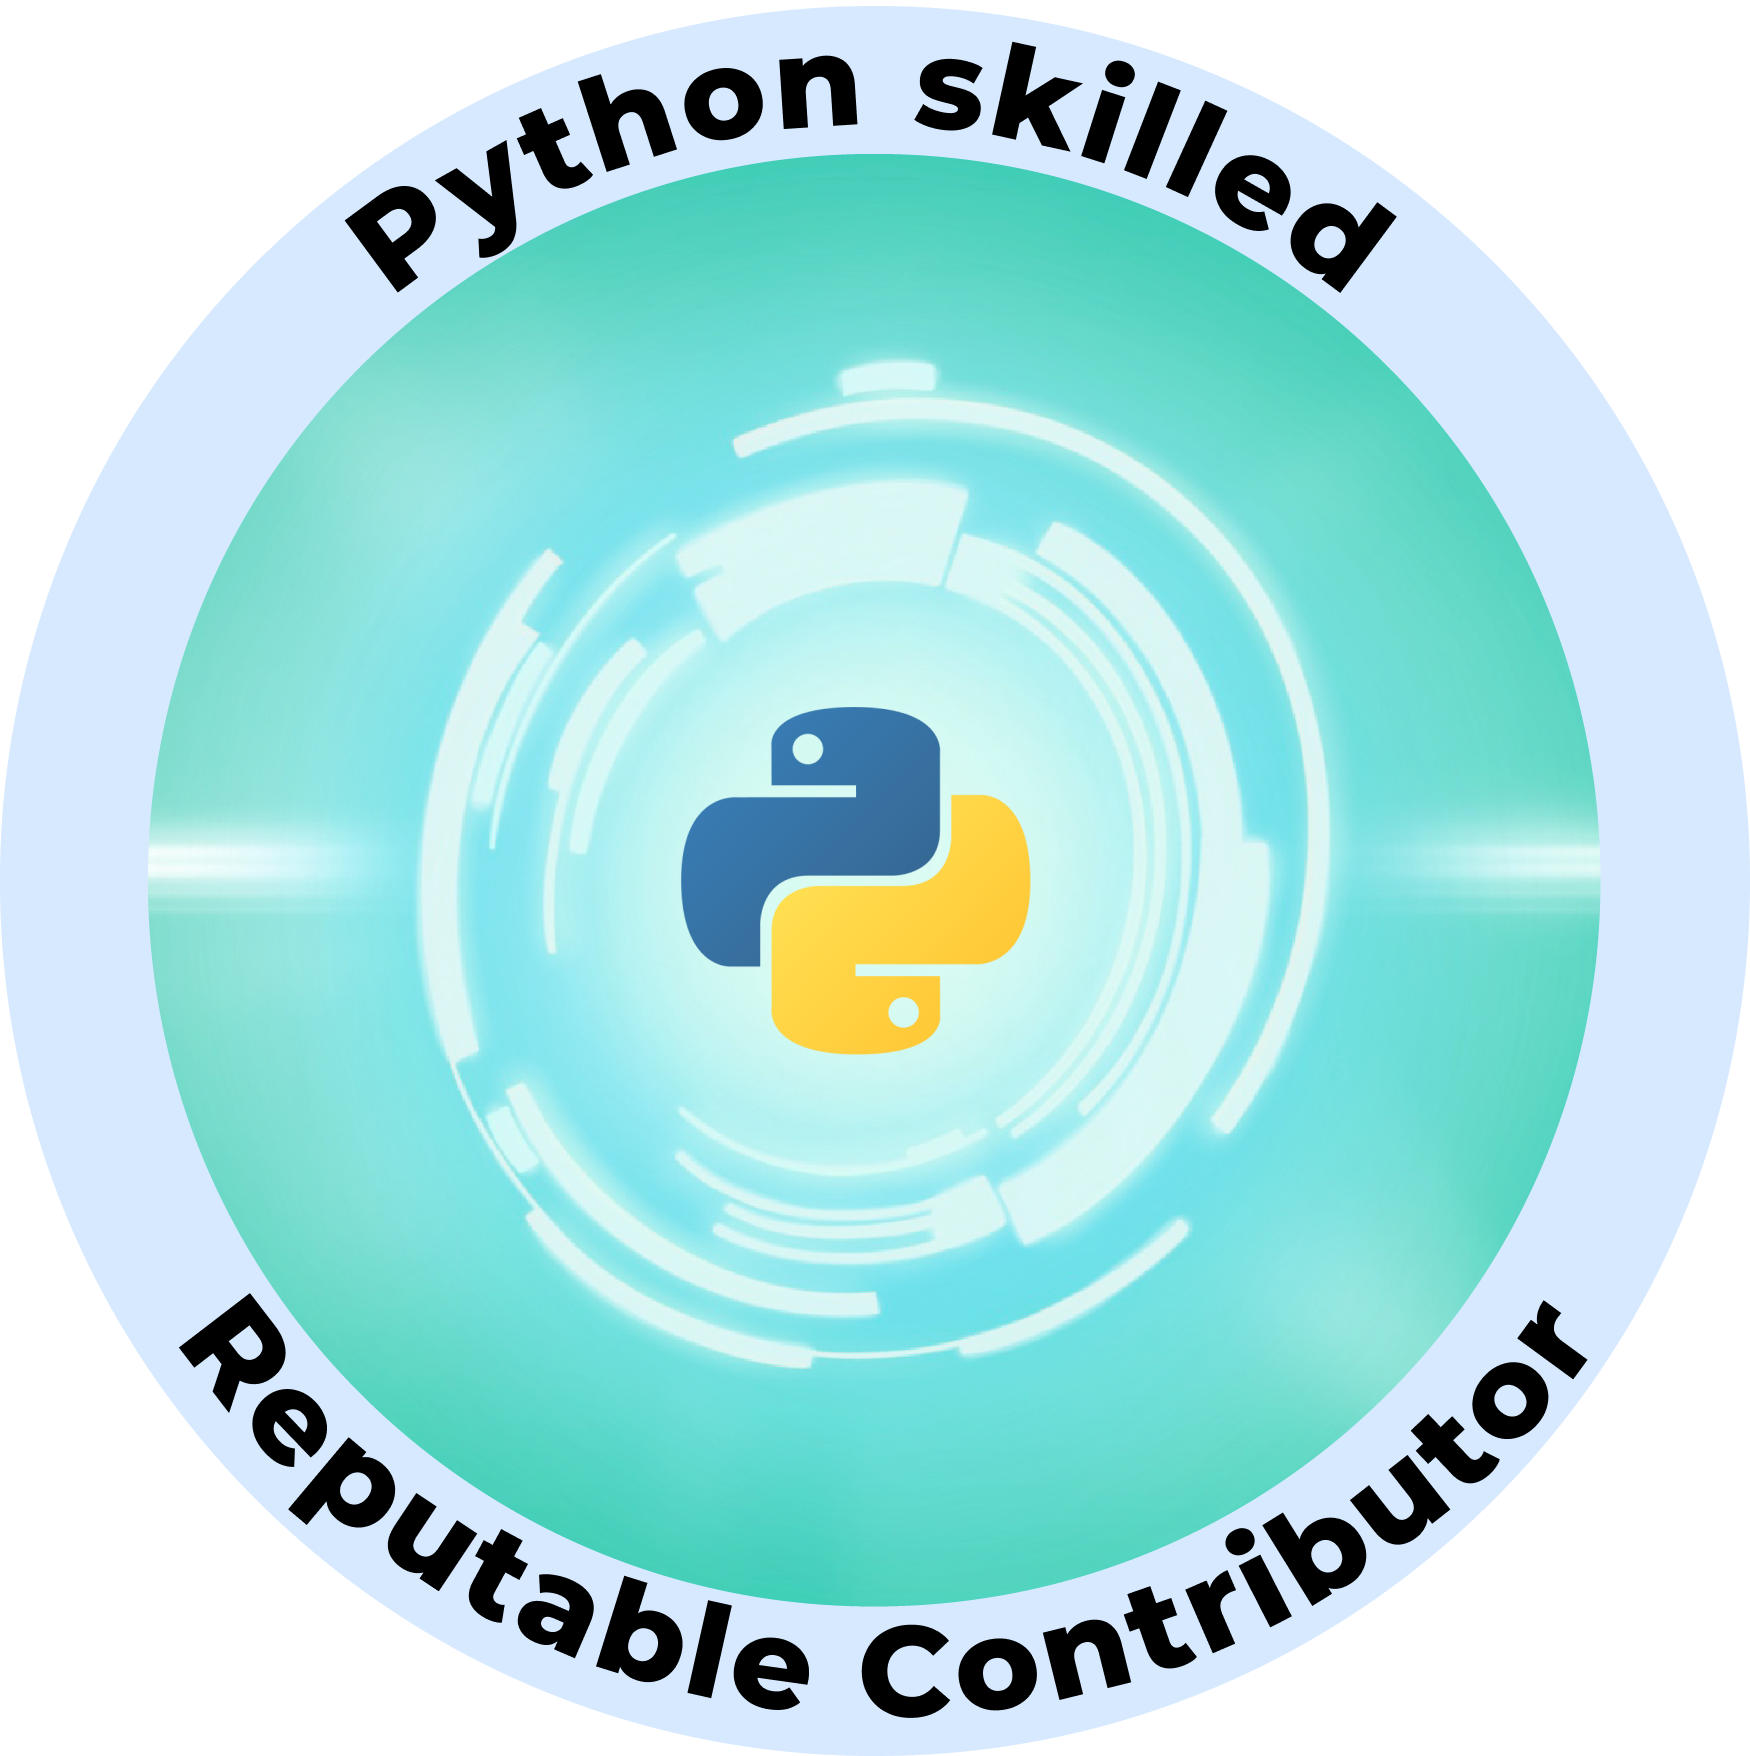 Web3 Badge | Reputable Python Skilled Contributor